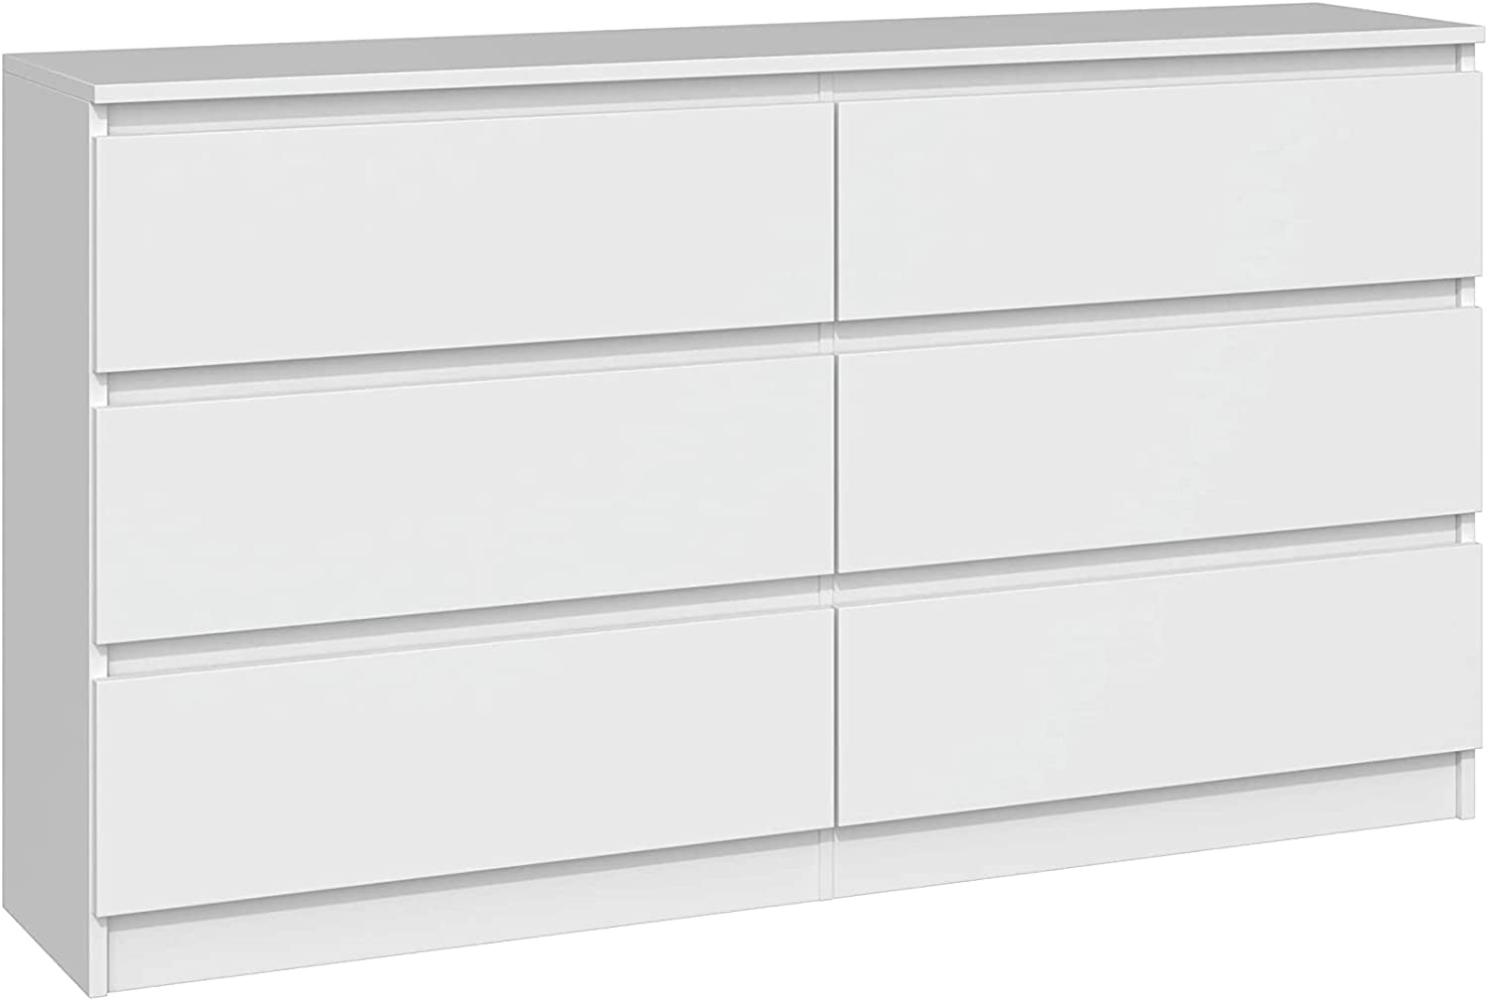 ADGO M6-140 MALWA Moderne Kommode mit 6 Schubladen L 138 x B 40 x H 77 cm Schlafzimmer Wohnzimmer Halle (Versand in 2 Paketen) (White Matt) Bild 1